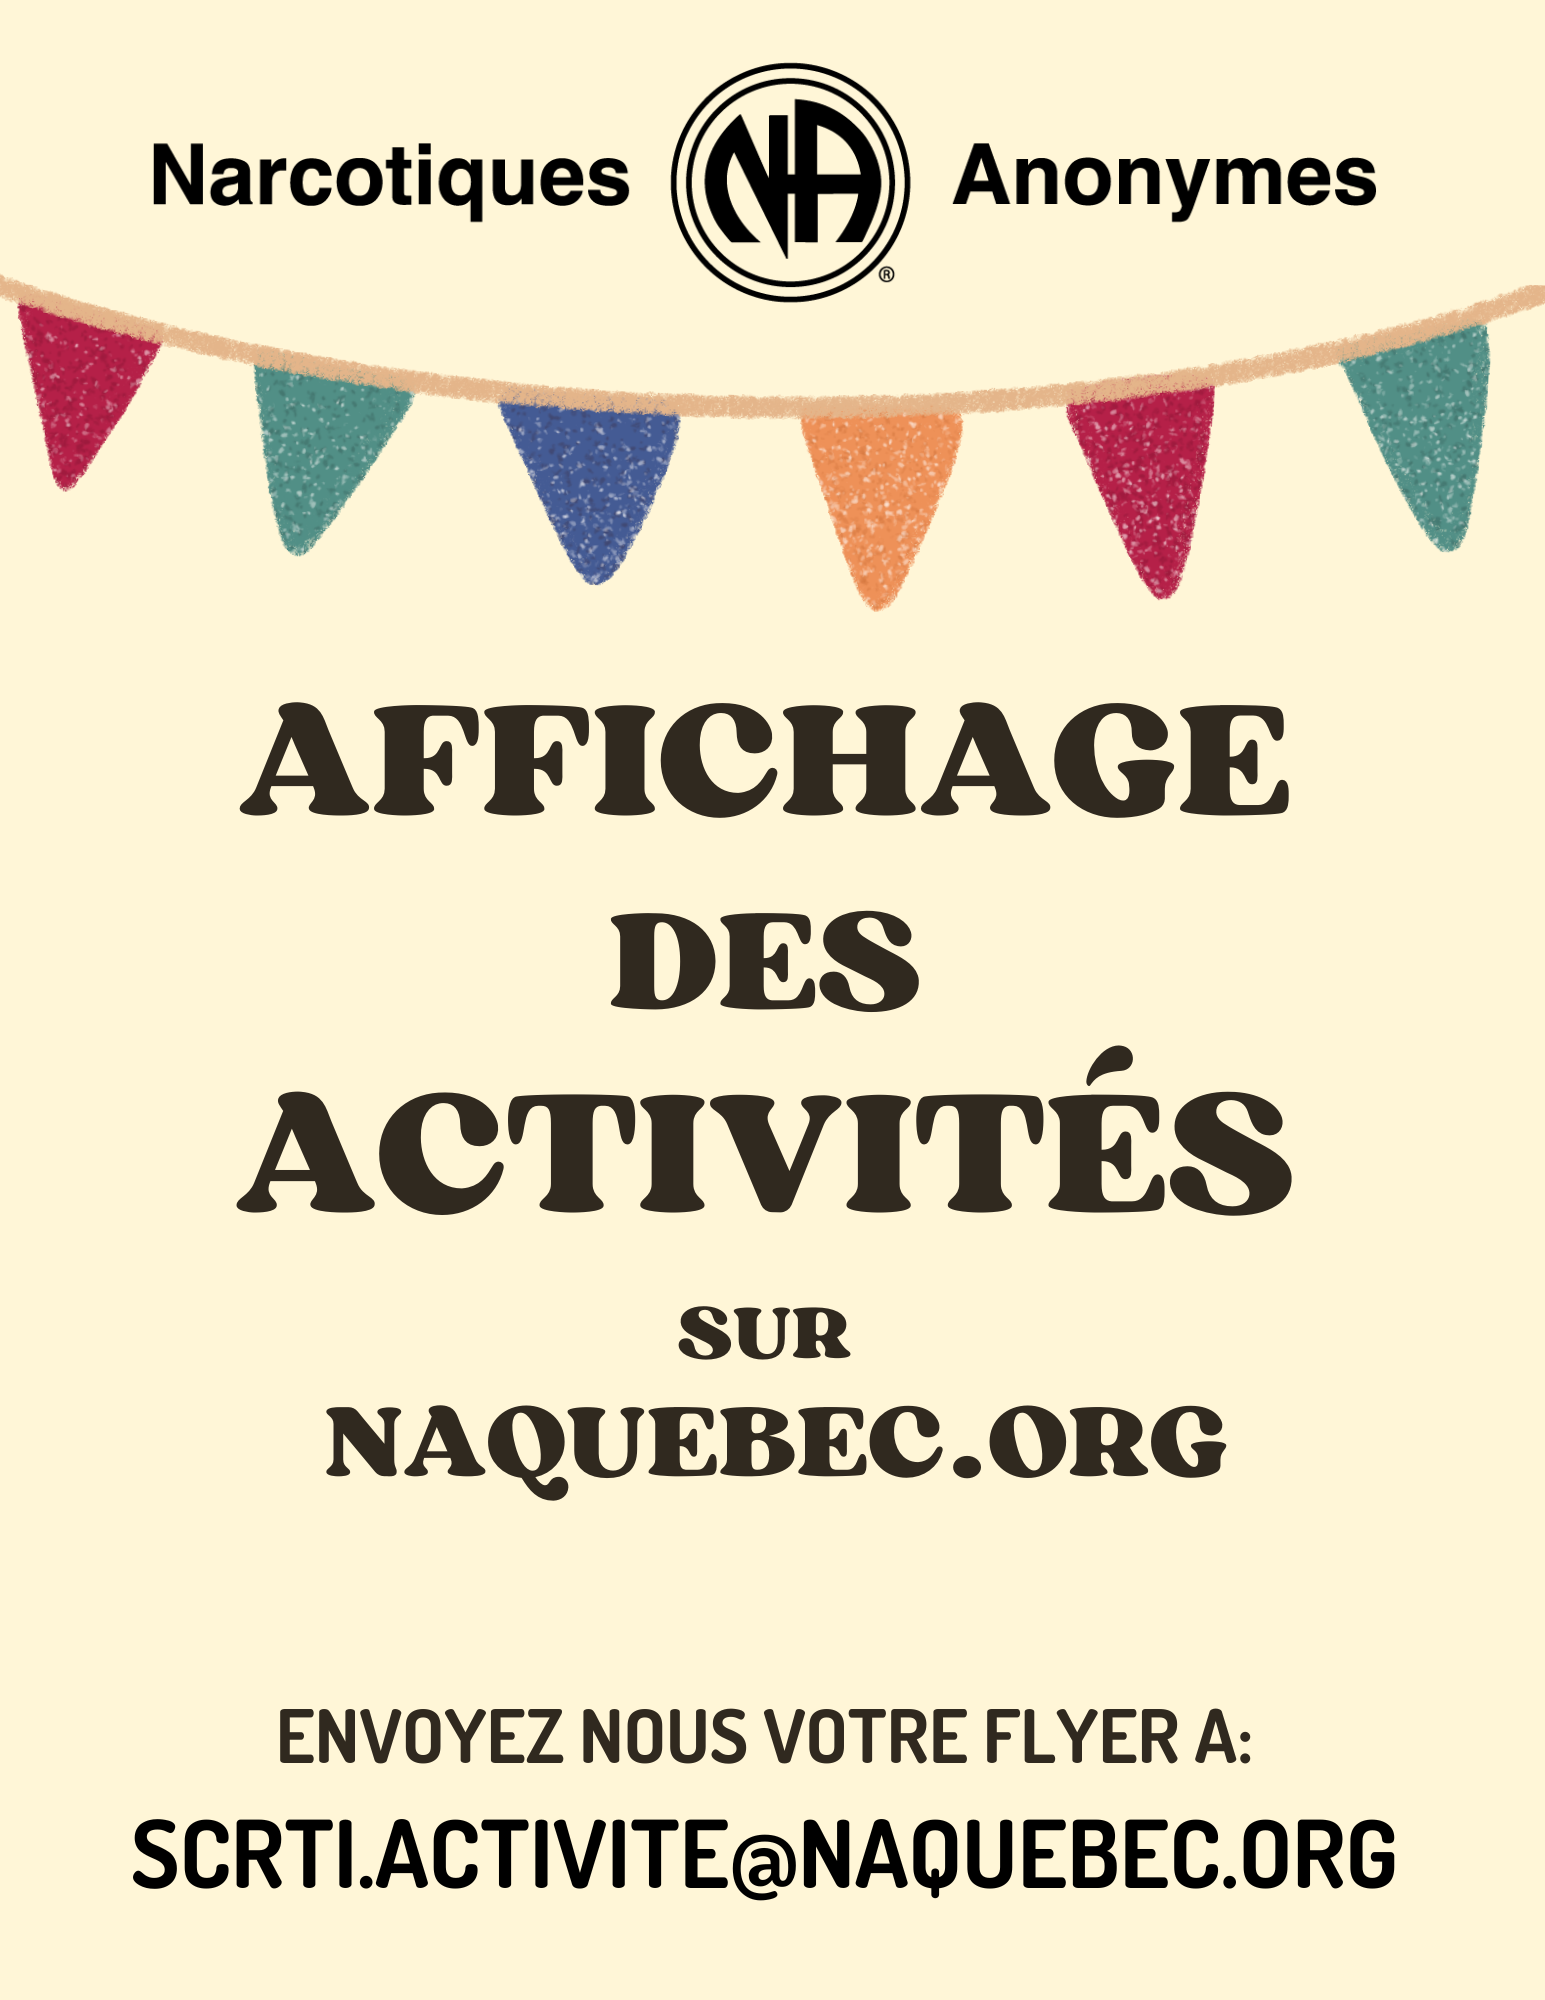 pour afficher votre activité sur le site web, envoyez votre flyer à scrti.activite@naquebec.org